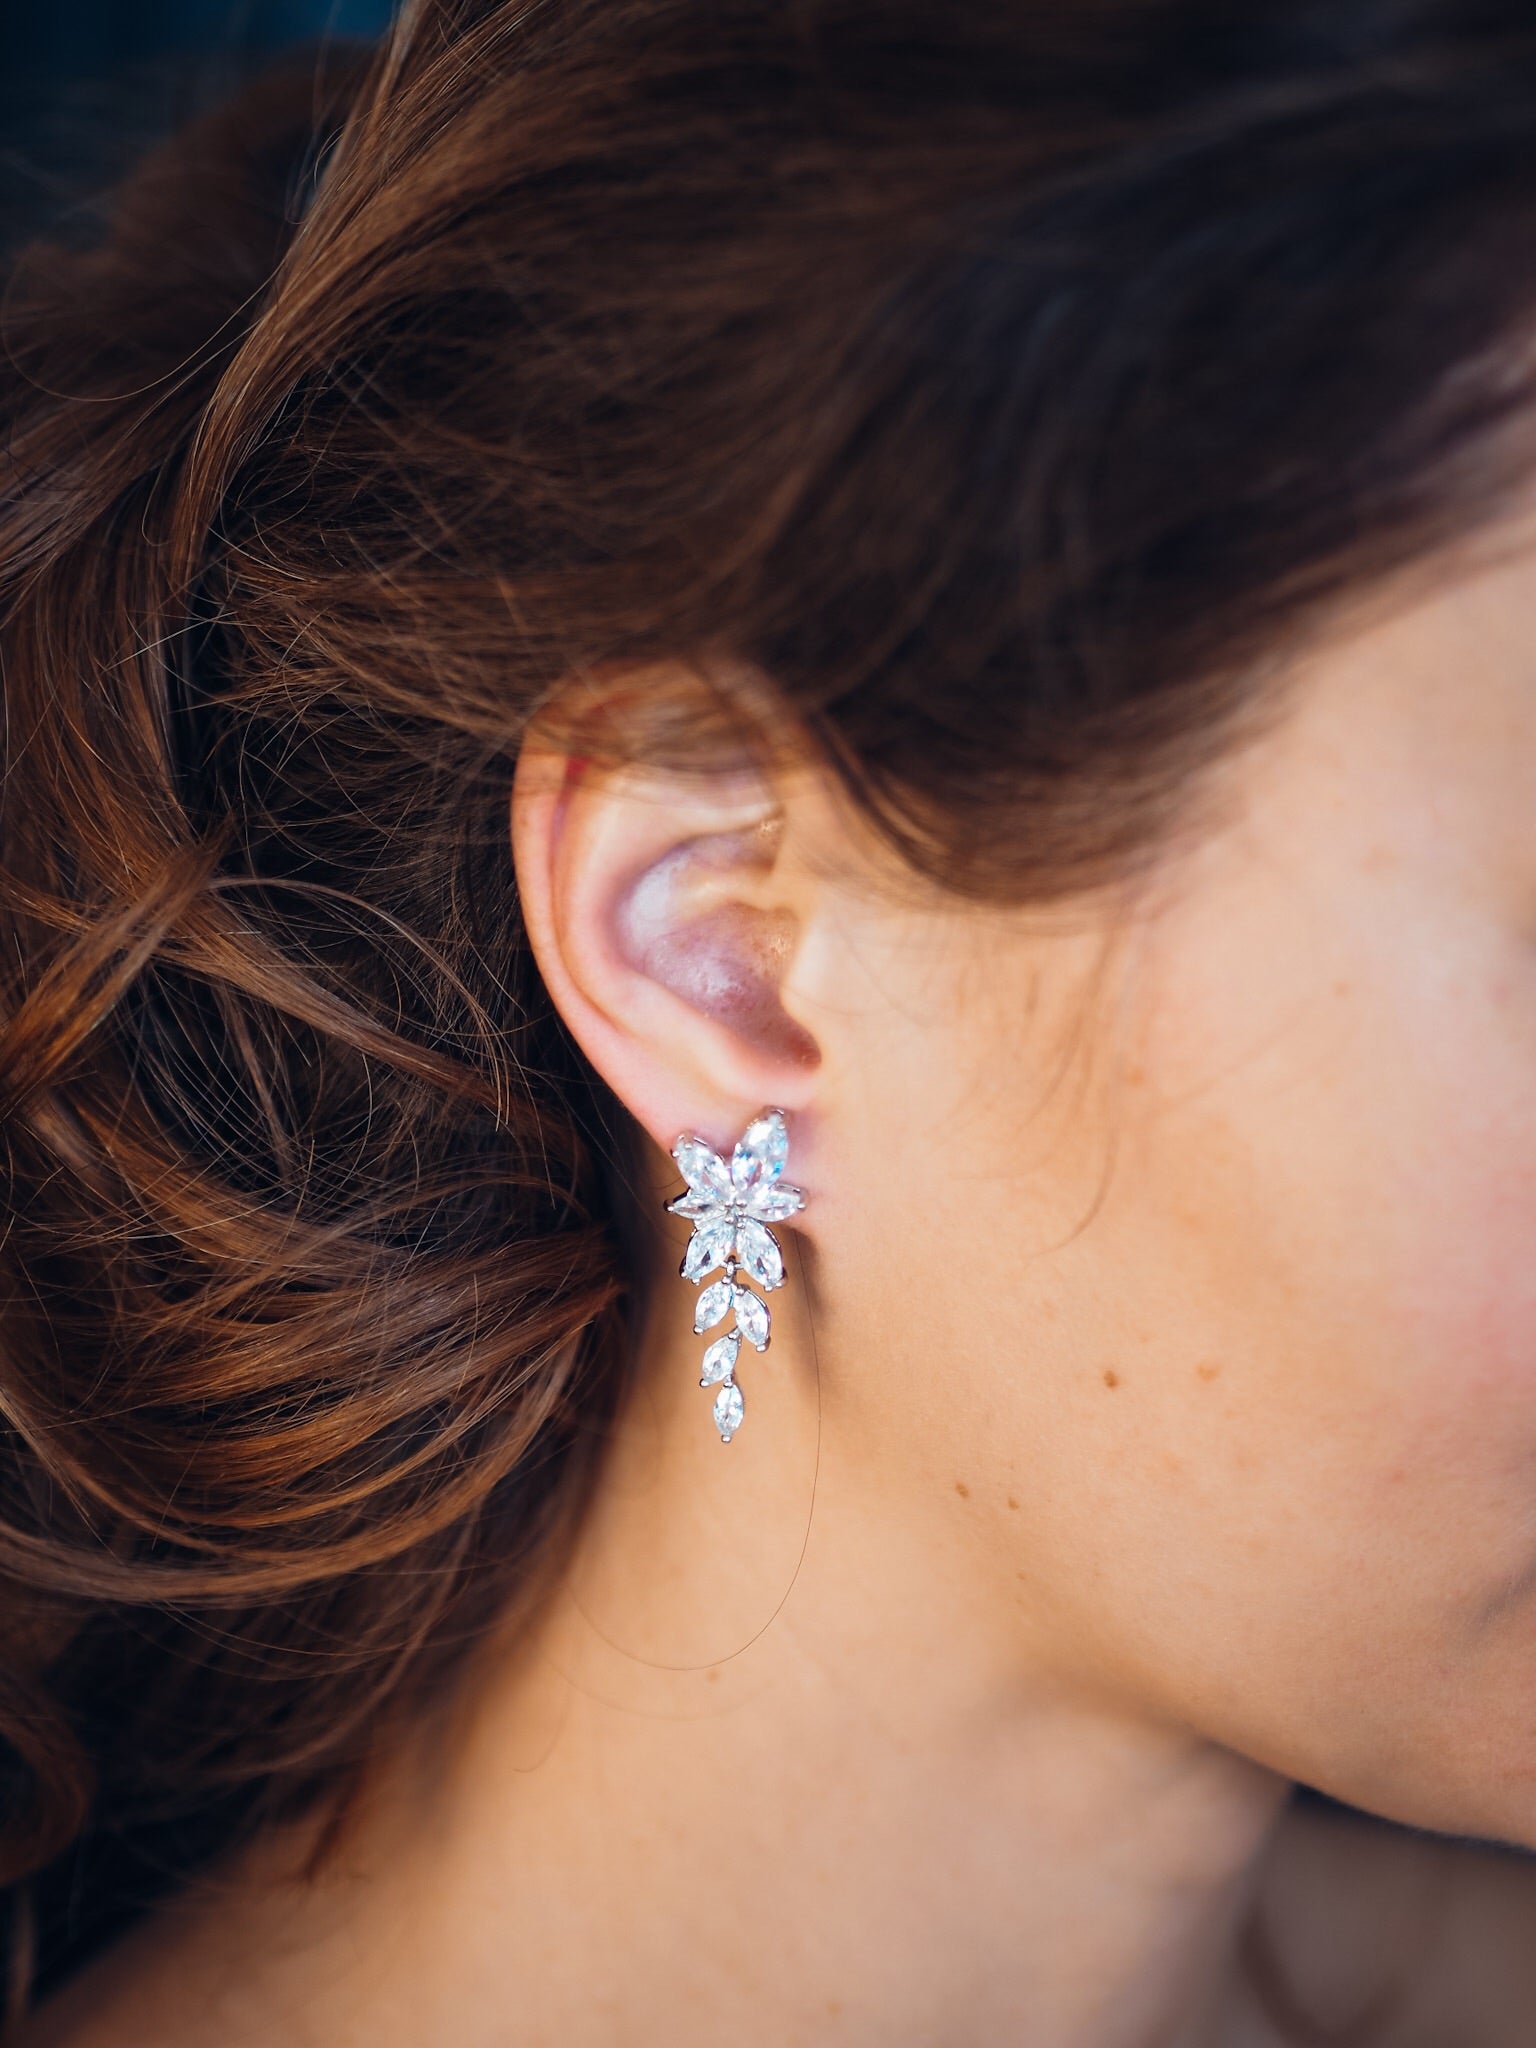 Crystal earrings short